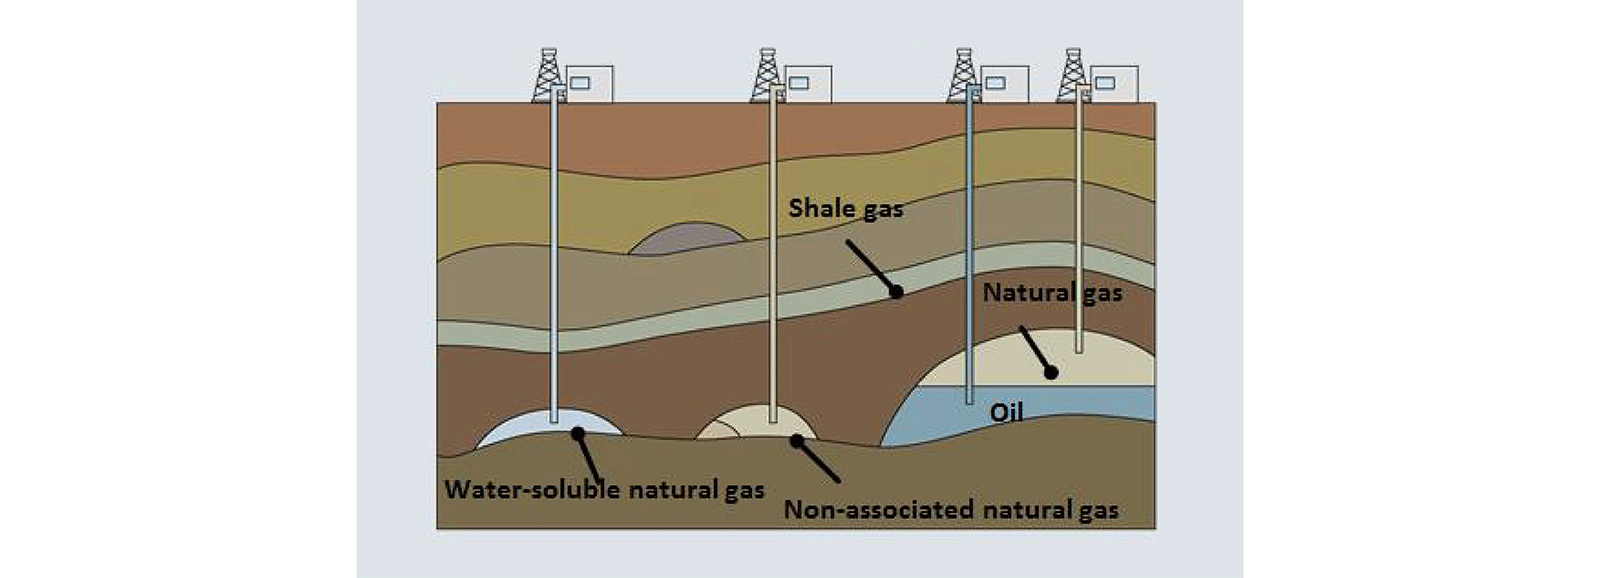 Estrazione di gas naturale convenzionale